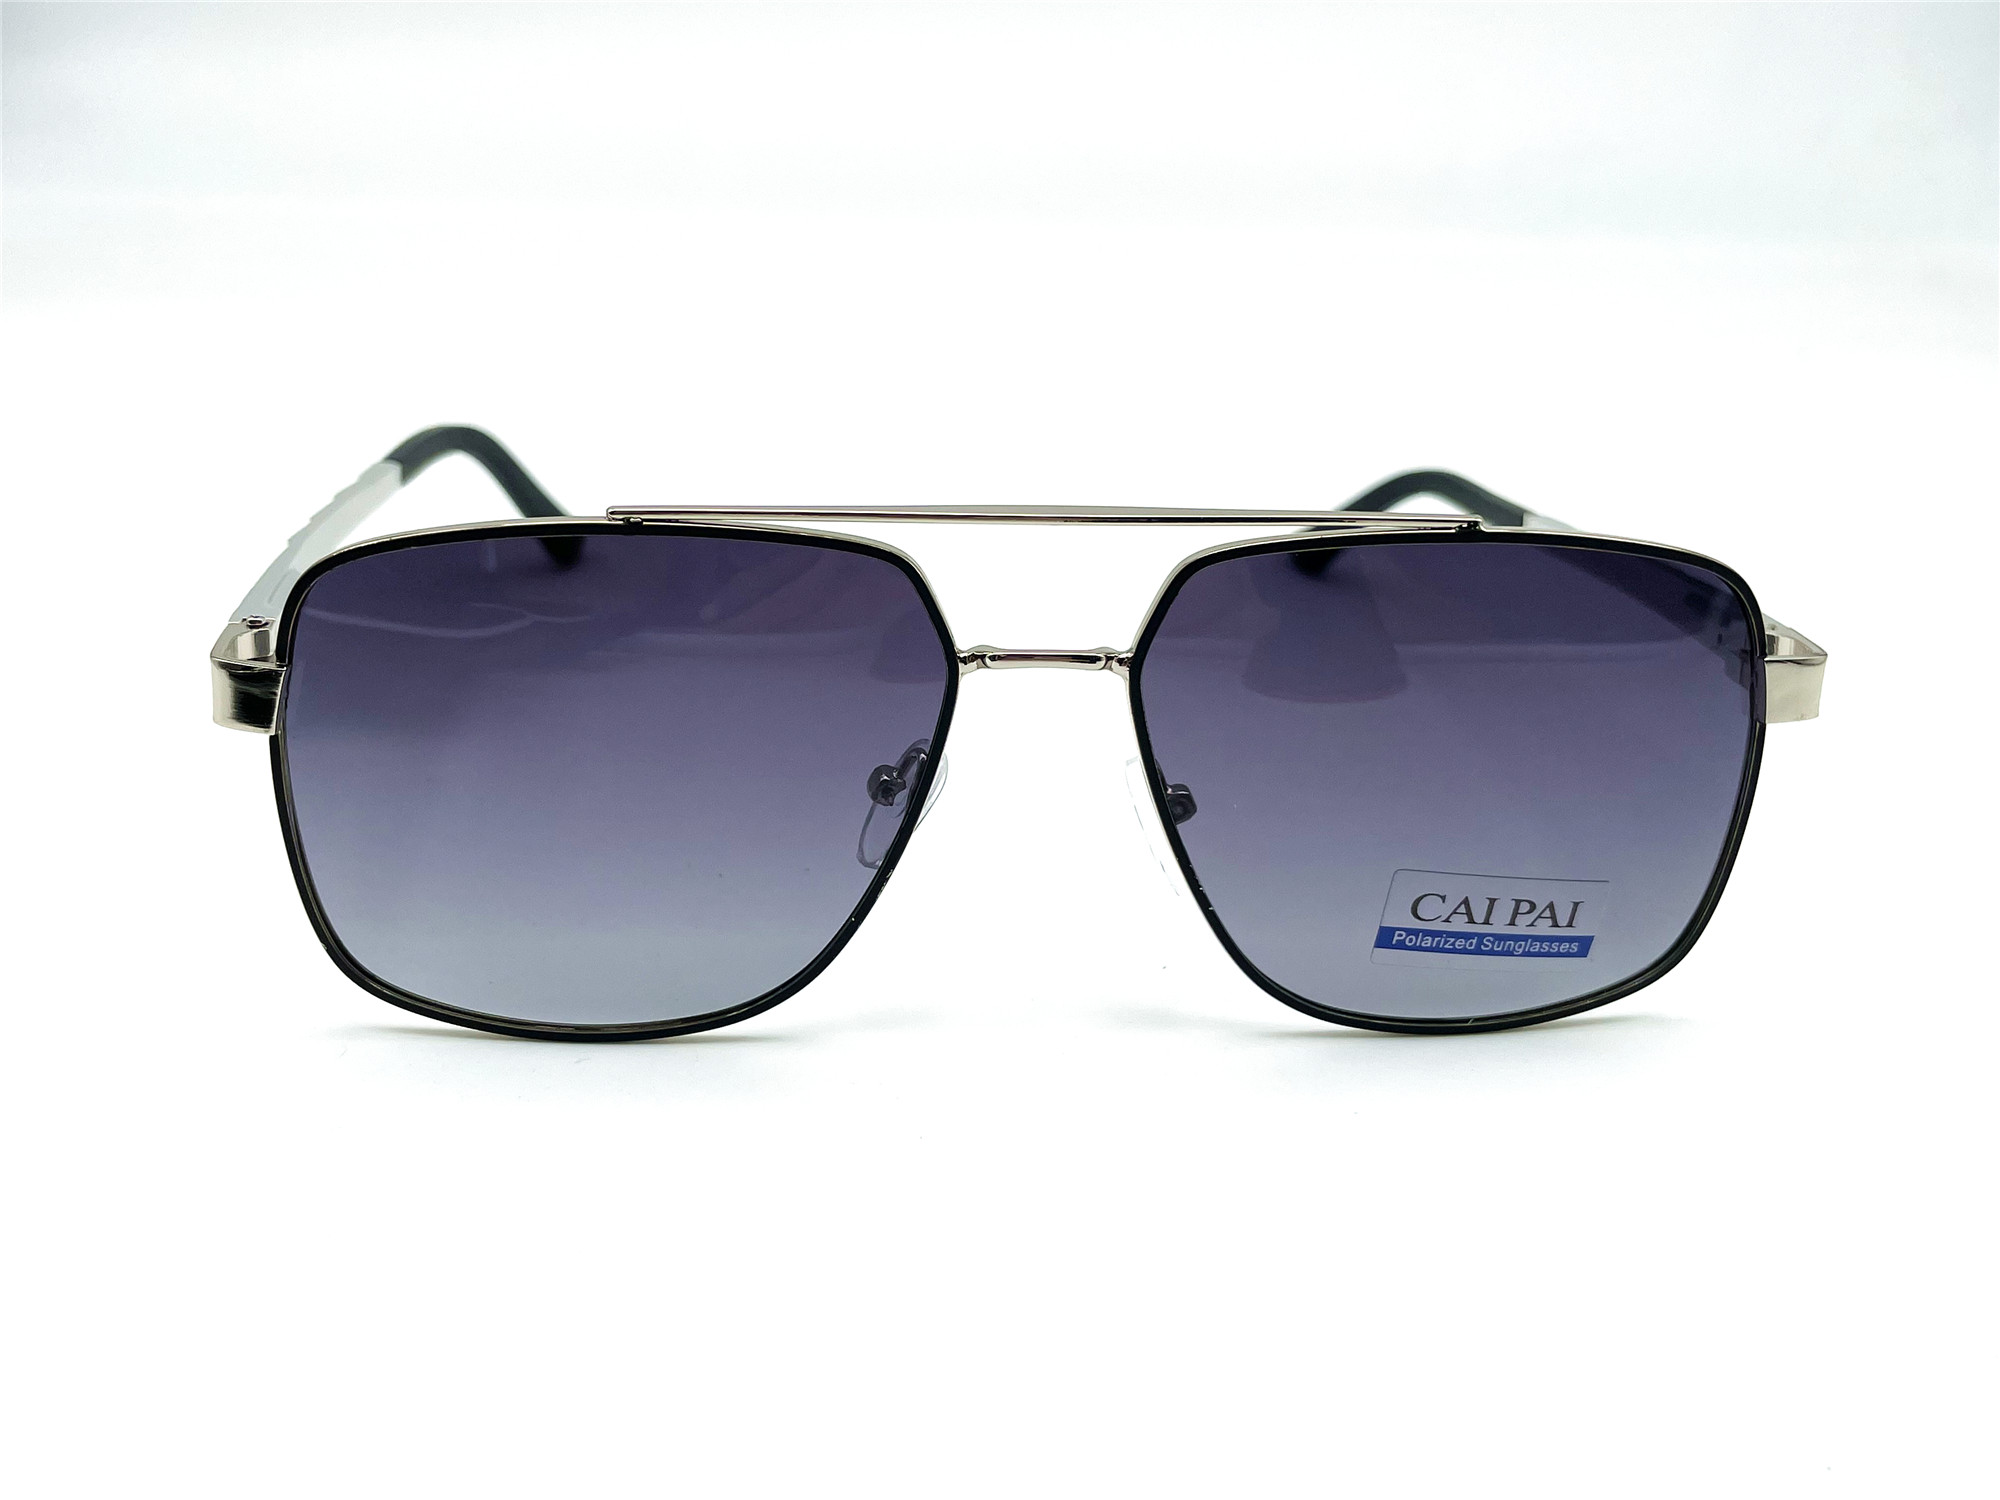  Солнцезащитные очки картинка Мужские Caipai Polarized Квадратные P4002-С3 